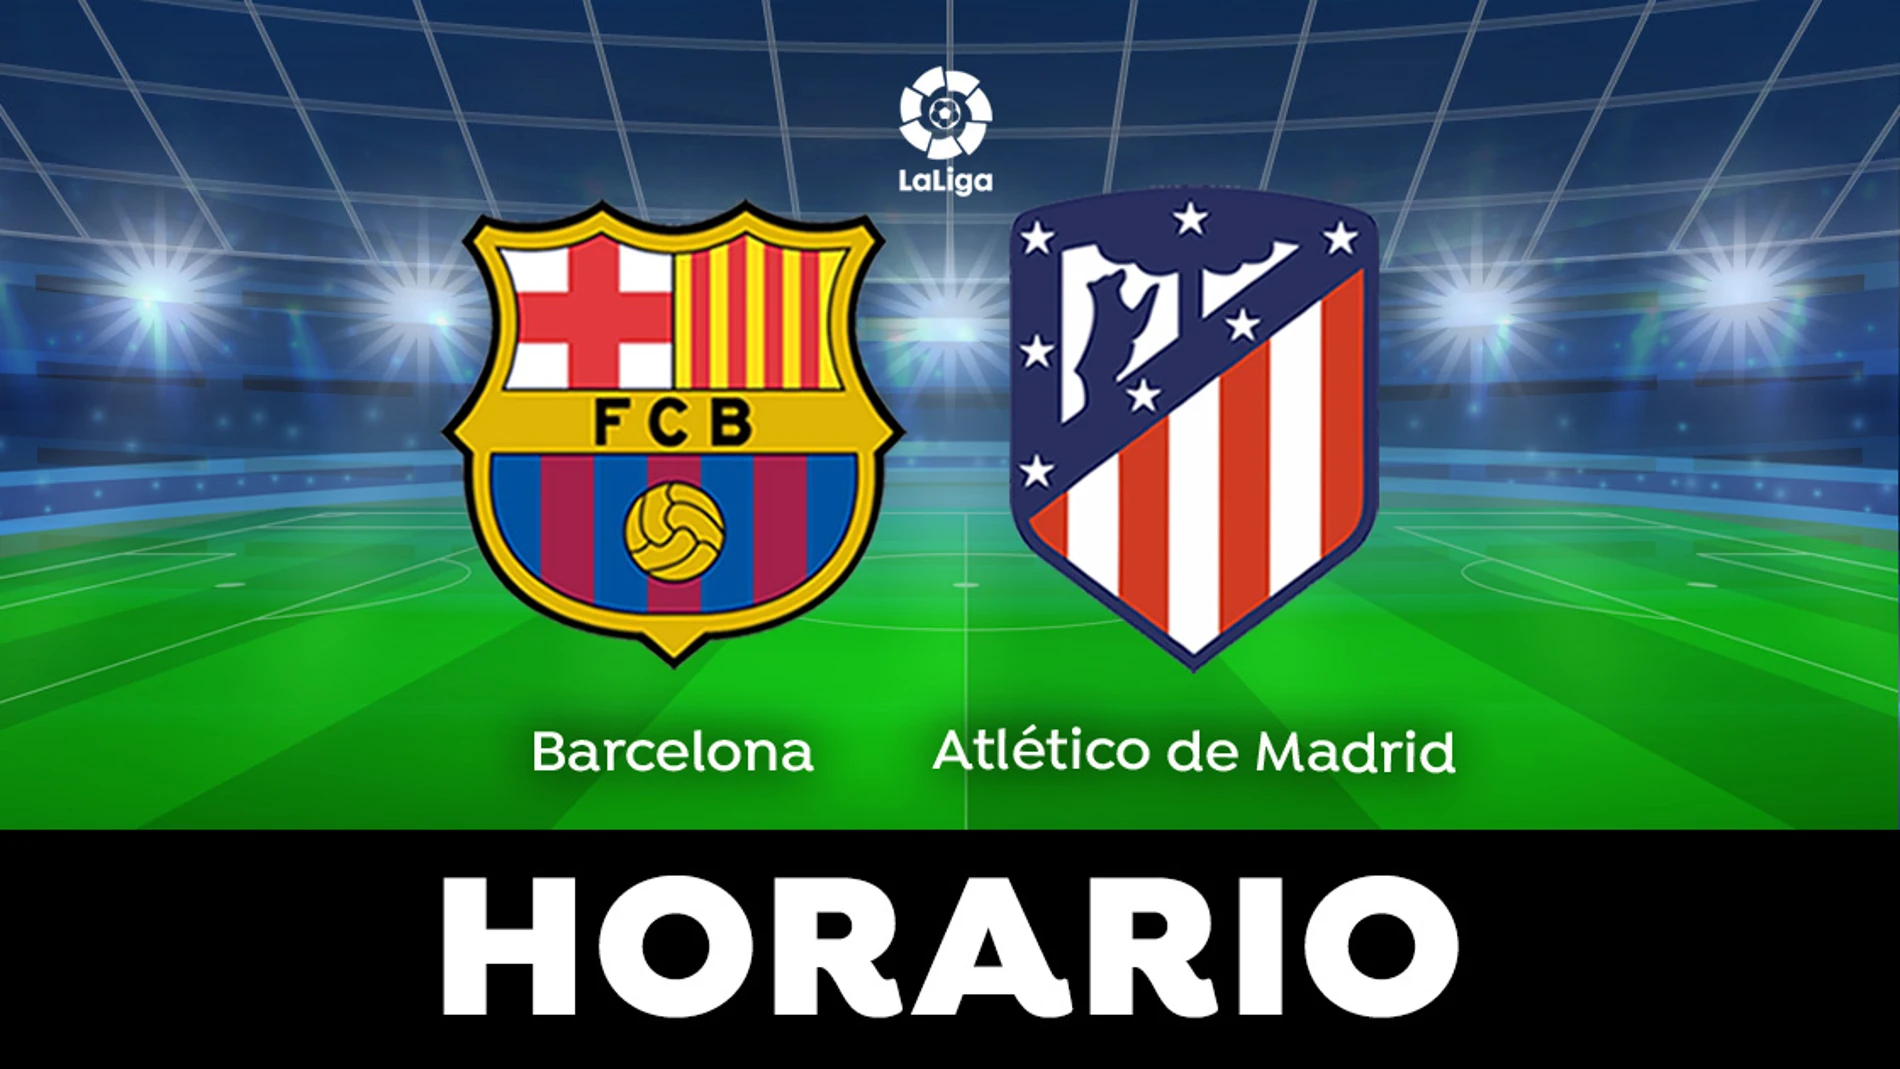 Barcelona - Atlético de Madrid: Horario y dónde ver el partido de LaLiga